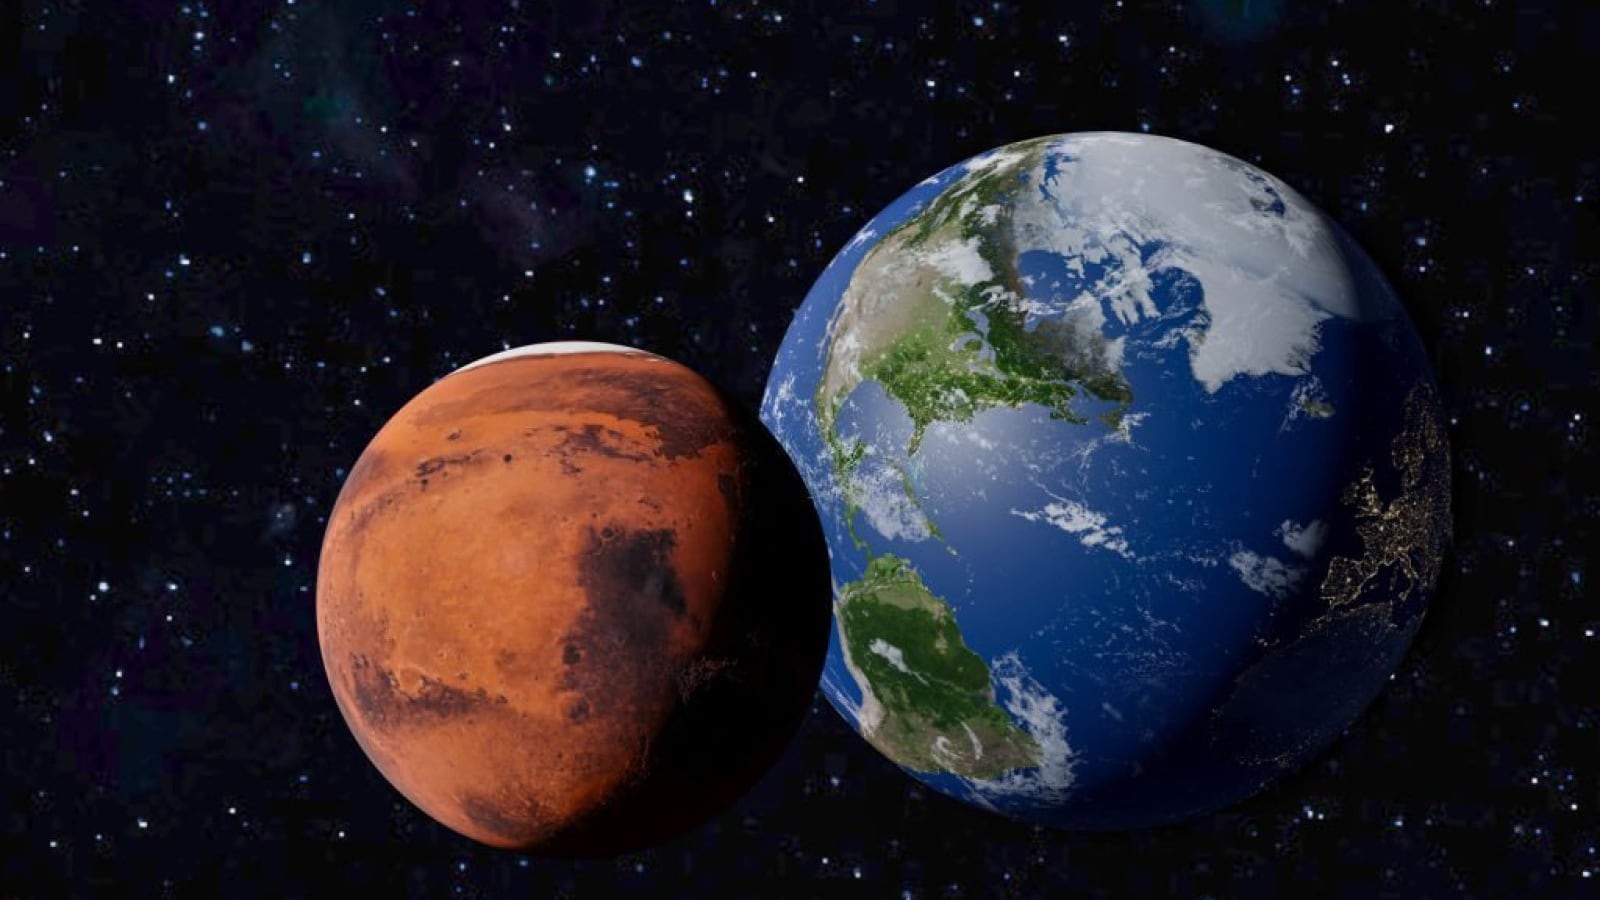 Marte y la Tierra